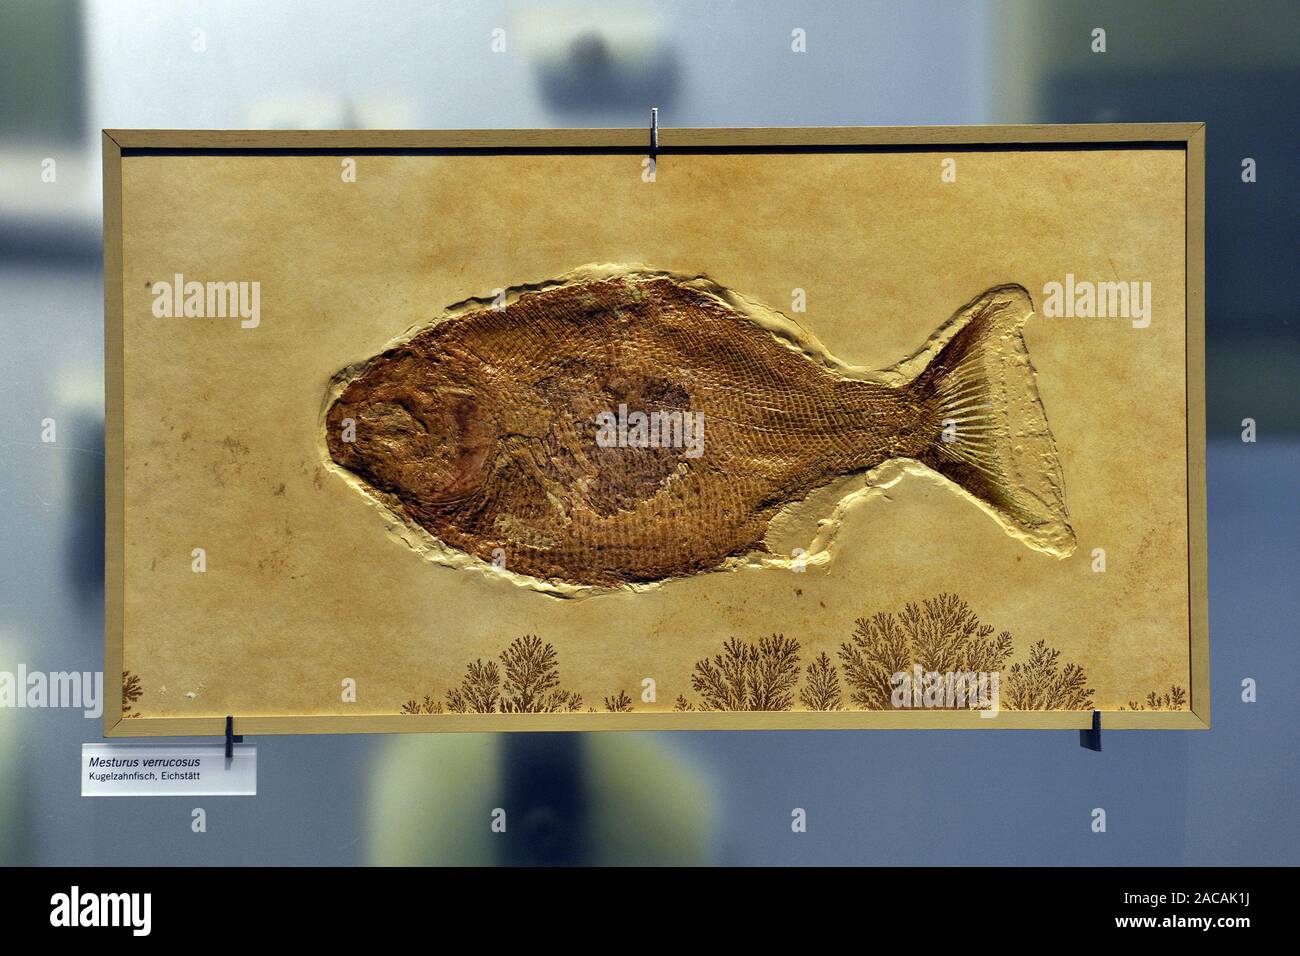 Versteinerung eine Kugel fisch Nummer, Mesturus verrucosus, Museum für Naturkunde in Berlin. Stockfoto